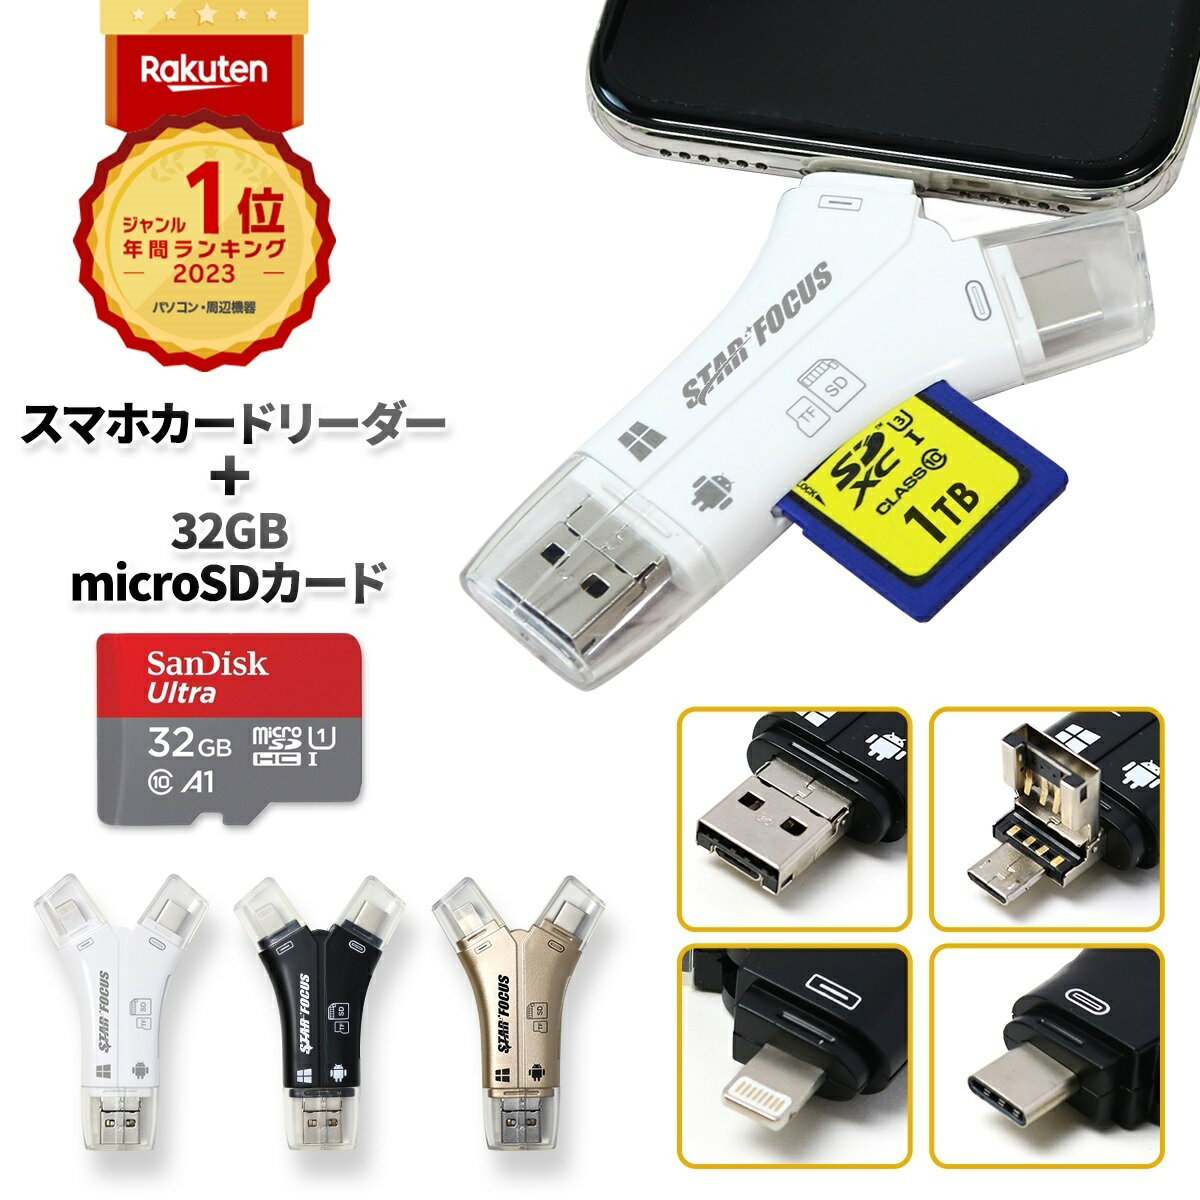 【マイクロSDカード 32GBセット】【楽天年間1位】【スターフォーカス正規品】送料無料 1年保証 日本語取説付 1TB対応 SDカードリーダー iPhone バックアップ USB USBメモリ 写真 microSDカードリーダー データ SDカードカメラリーダー